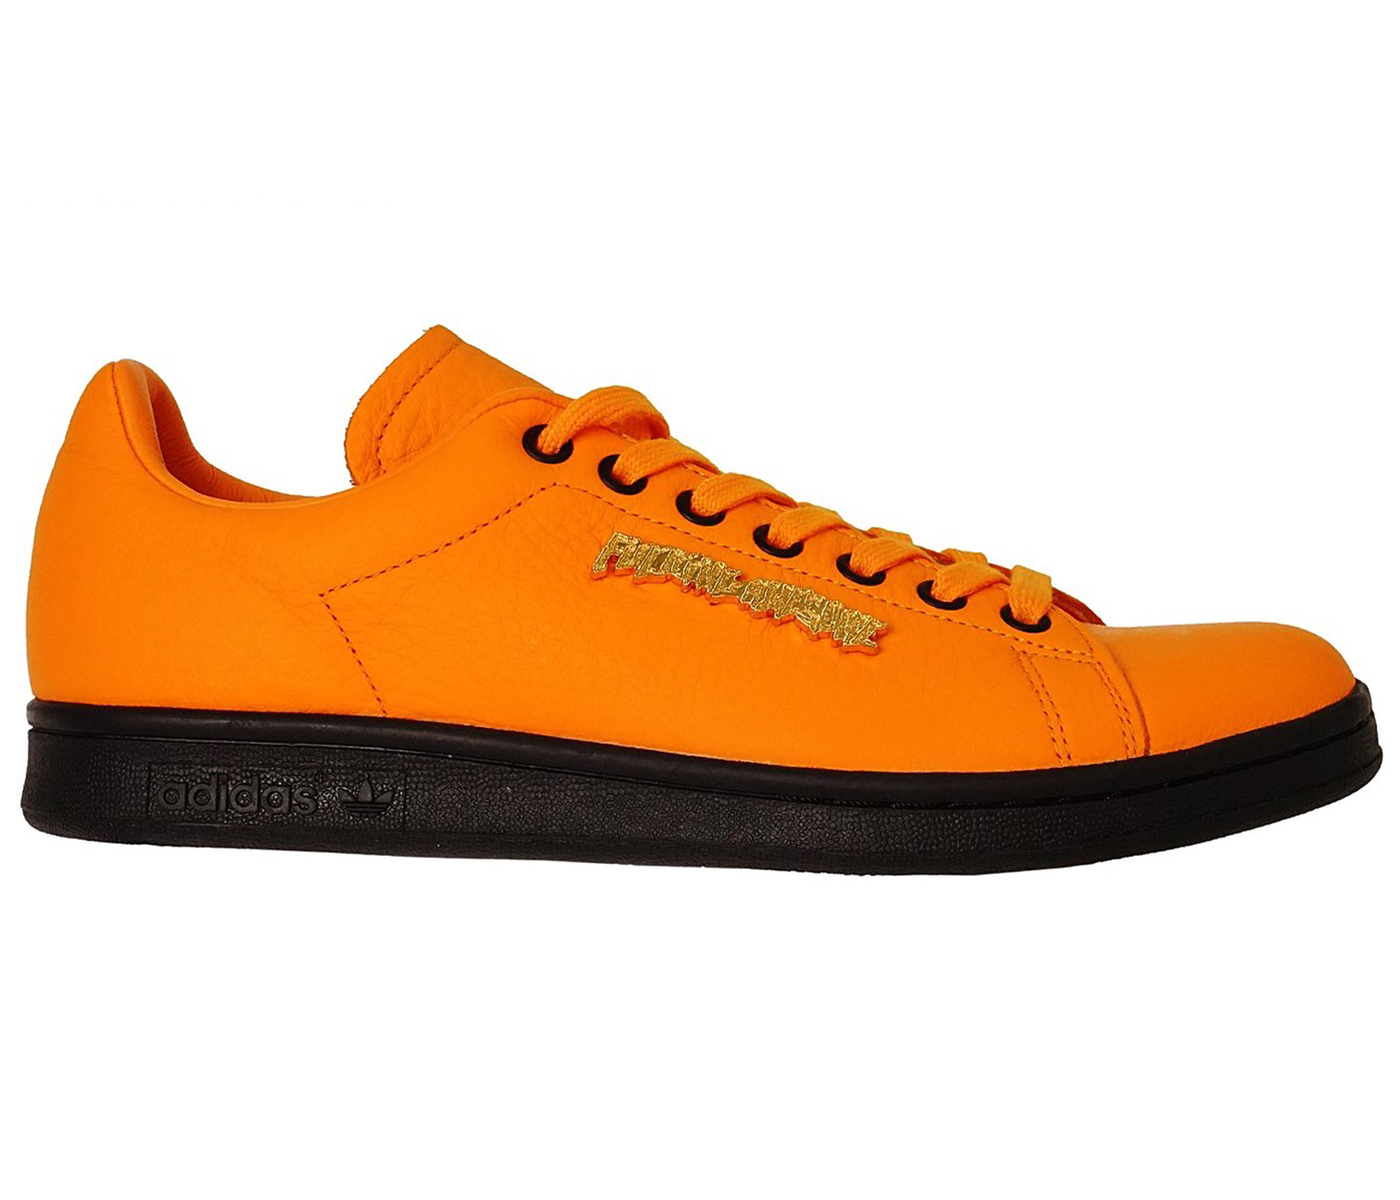 adidas Stan Smith Fucking Awesome Orange Men's - FU9057 - US